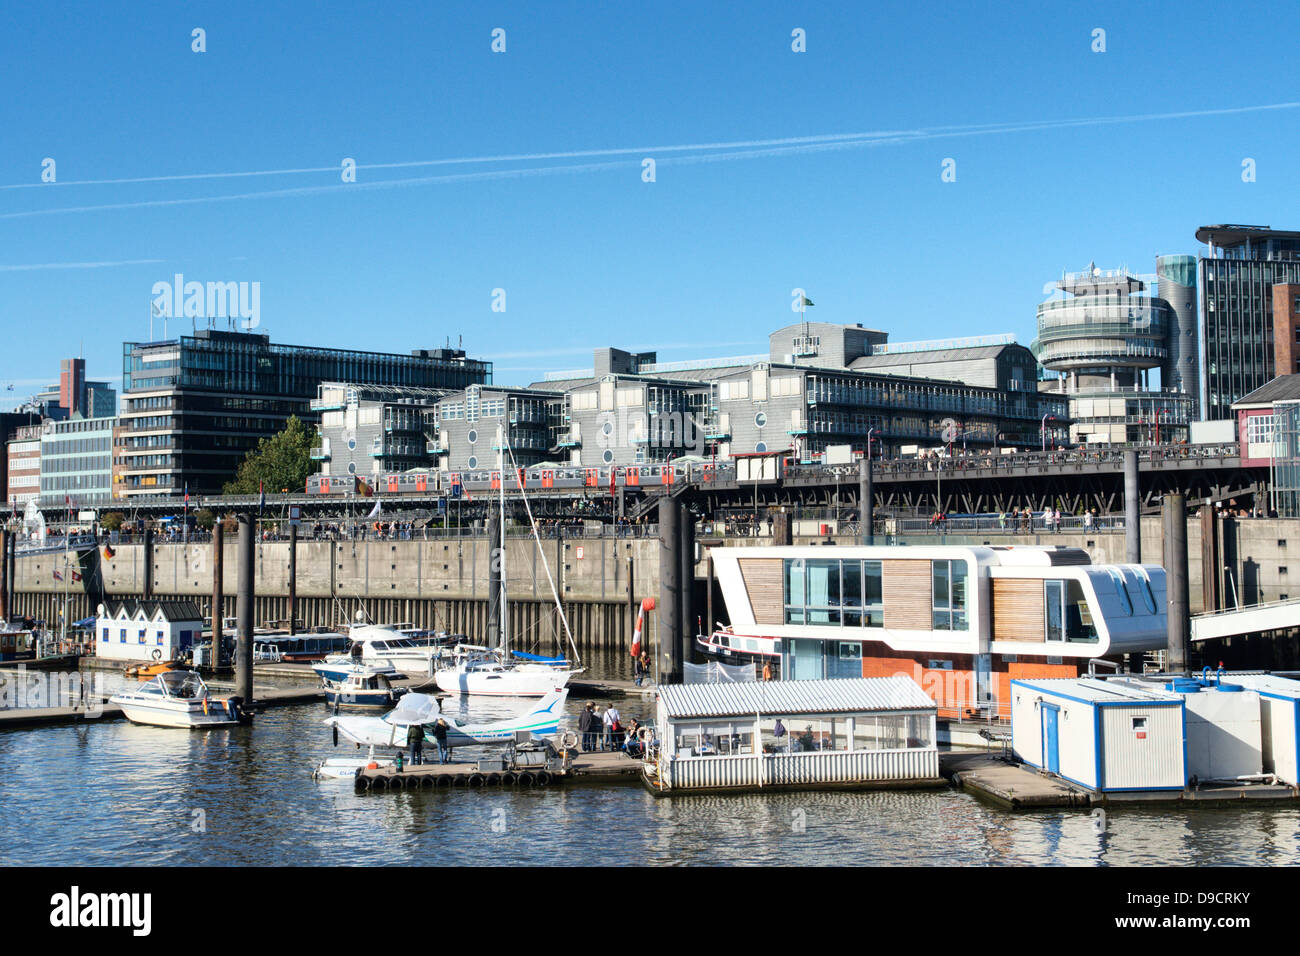 Inversionista en el puerto de Hamburgo Foto de stock